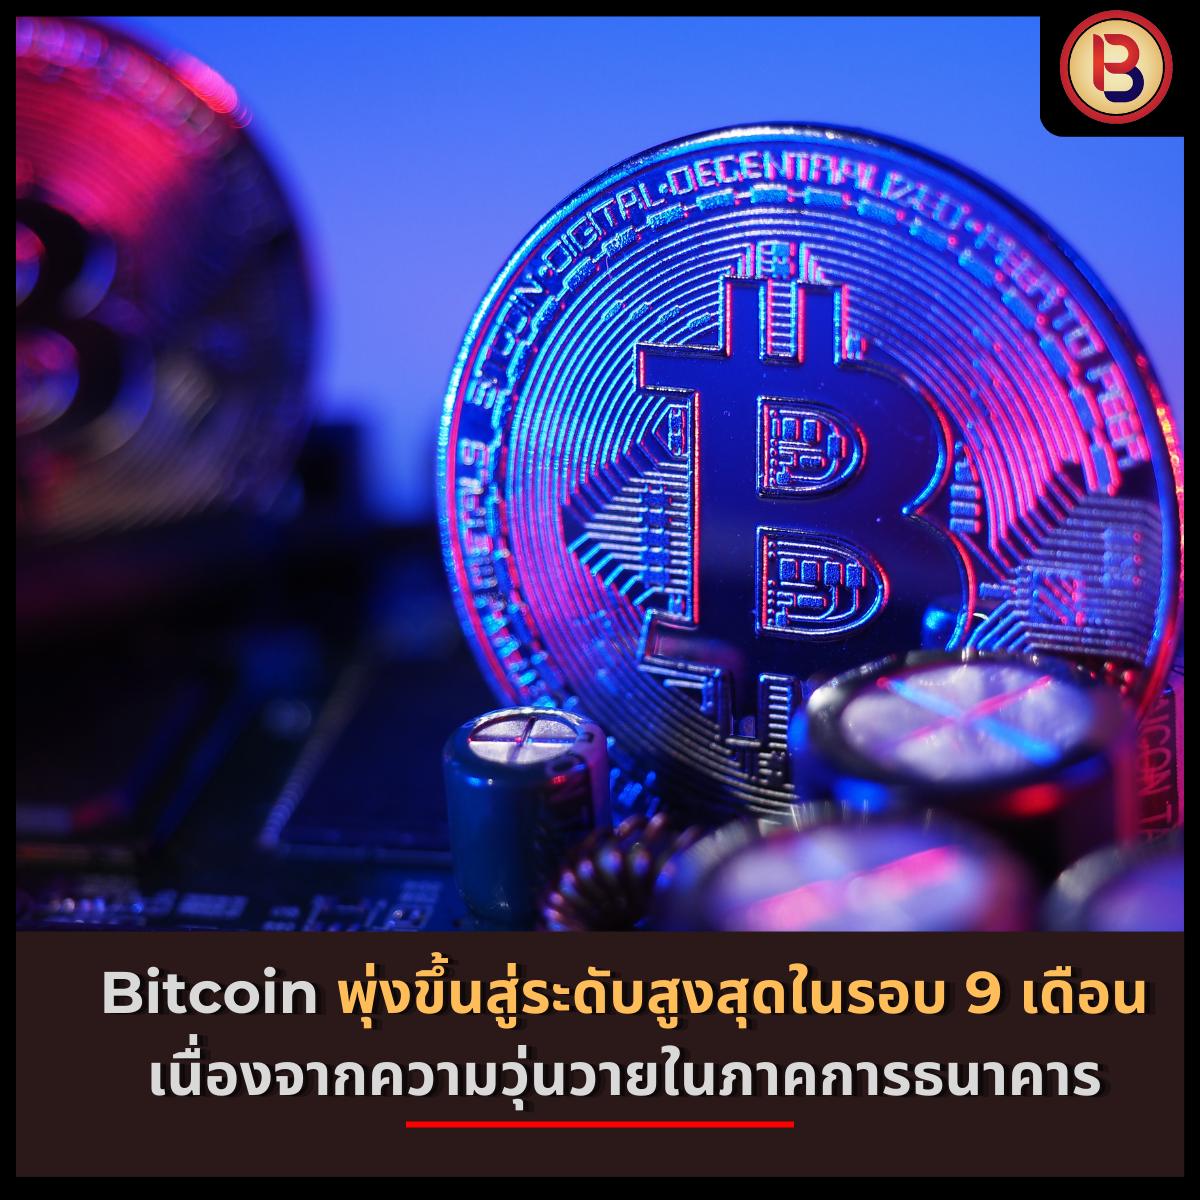 Bitcoin พุ่งขึ้นสู่ระดับสูงสุดในรอบ 9 เดือน เนื่องจากความวุ่นวายในภาคการธนาคาร